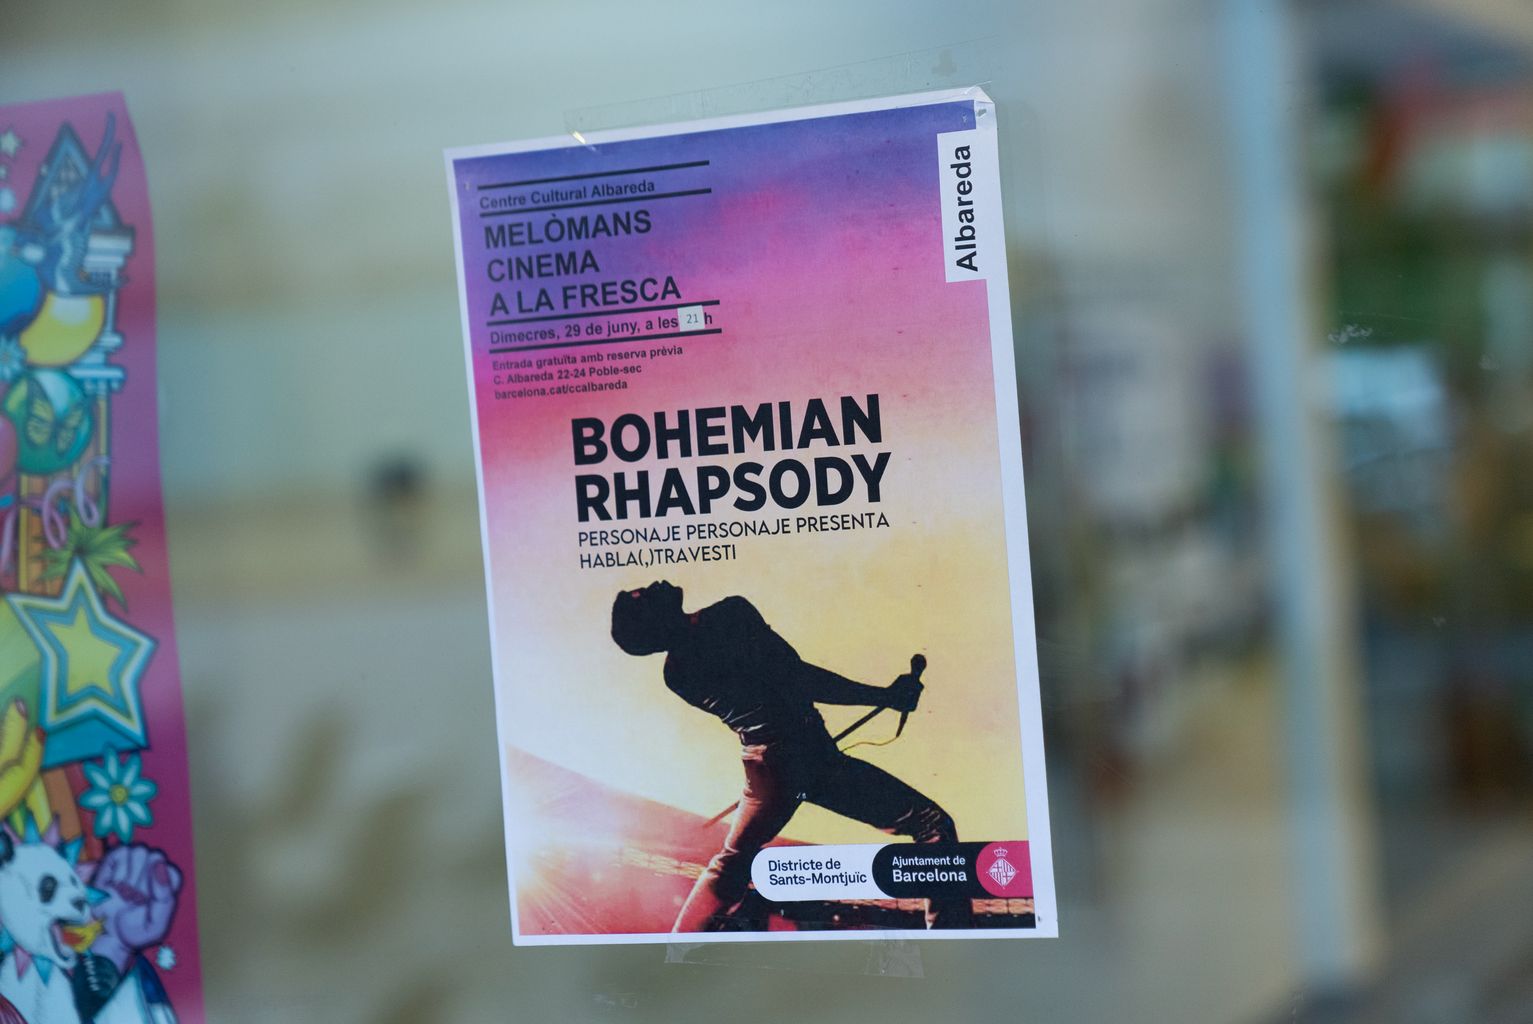 Cartel del ciclo “Melómanos” informando de la programación de la película “Bohemian Rhapsody”